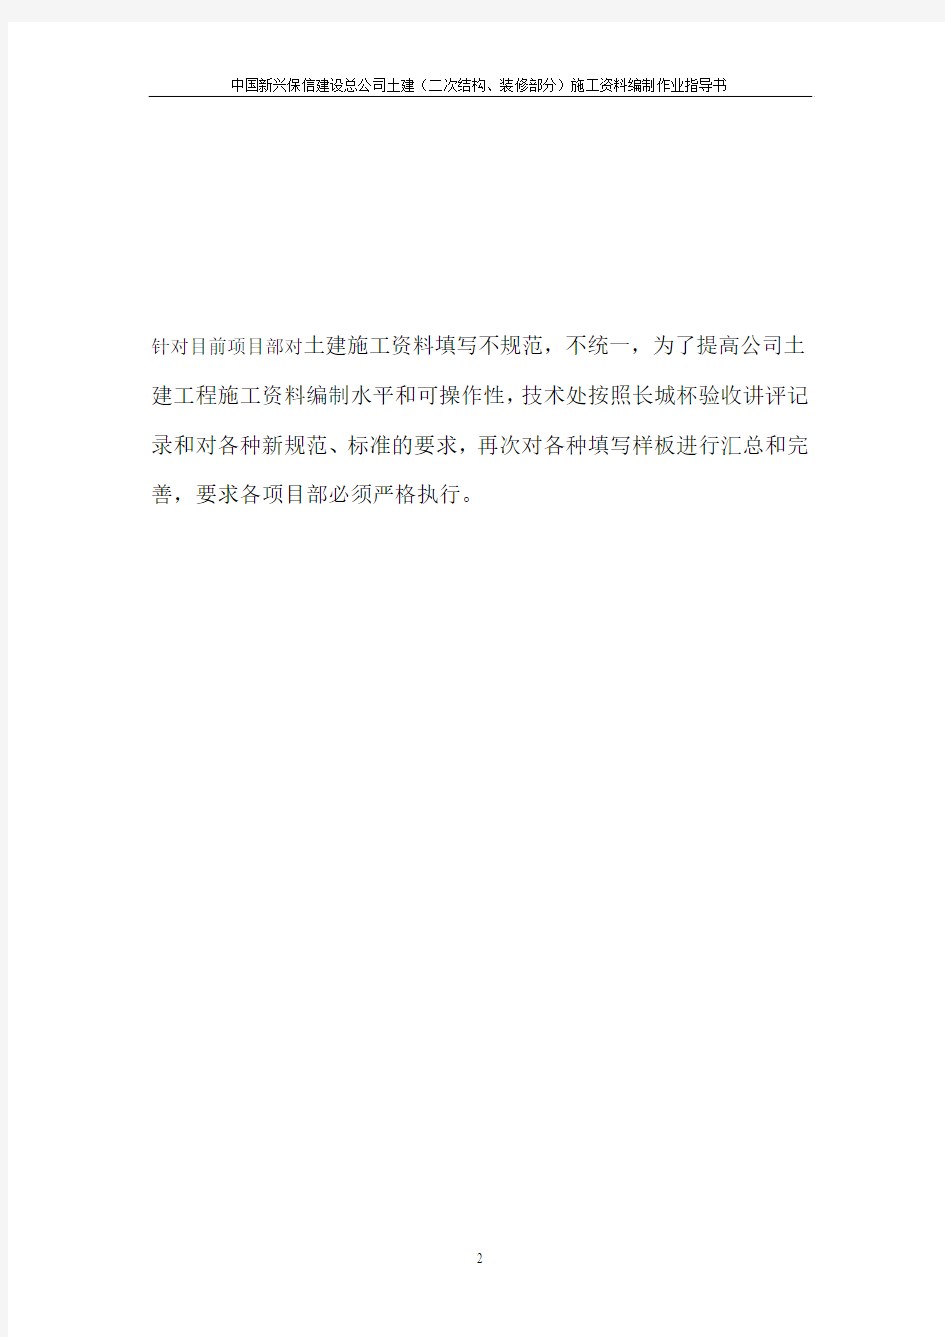 中国新兴保信建设总公司土建(二次结构、装修部分)施工资料编制作业指导书(09.4.3)